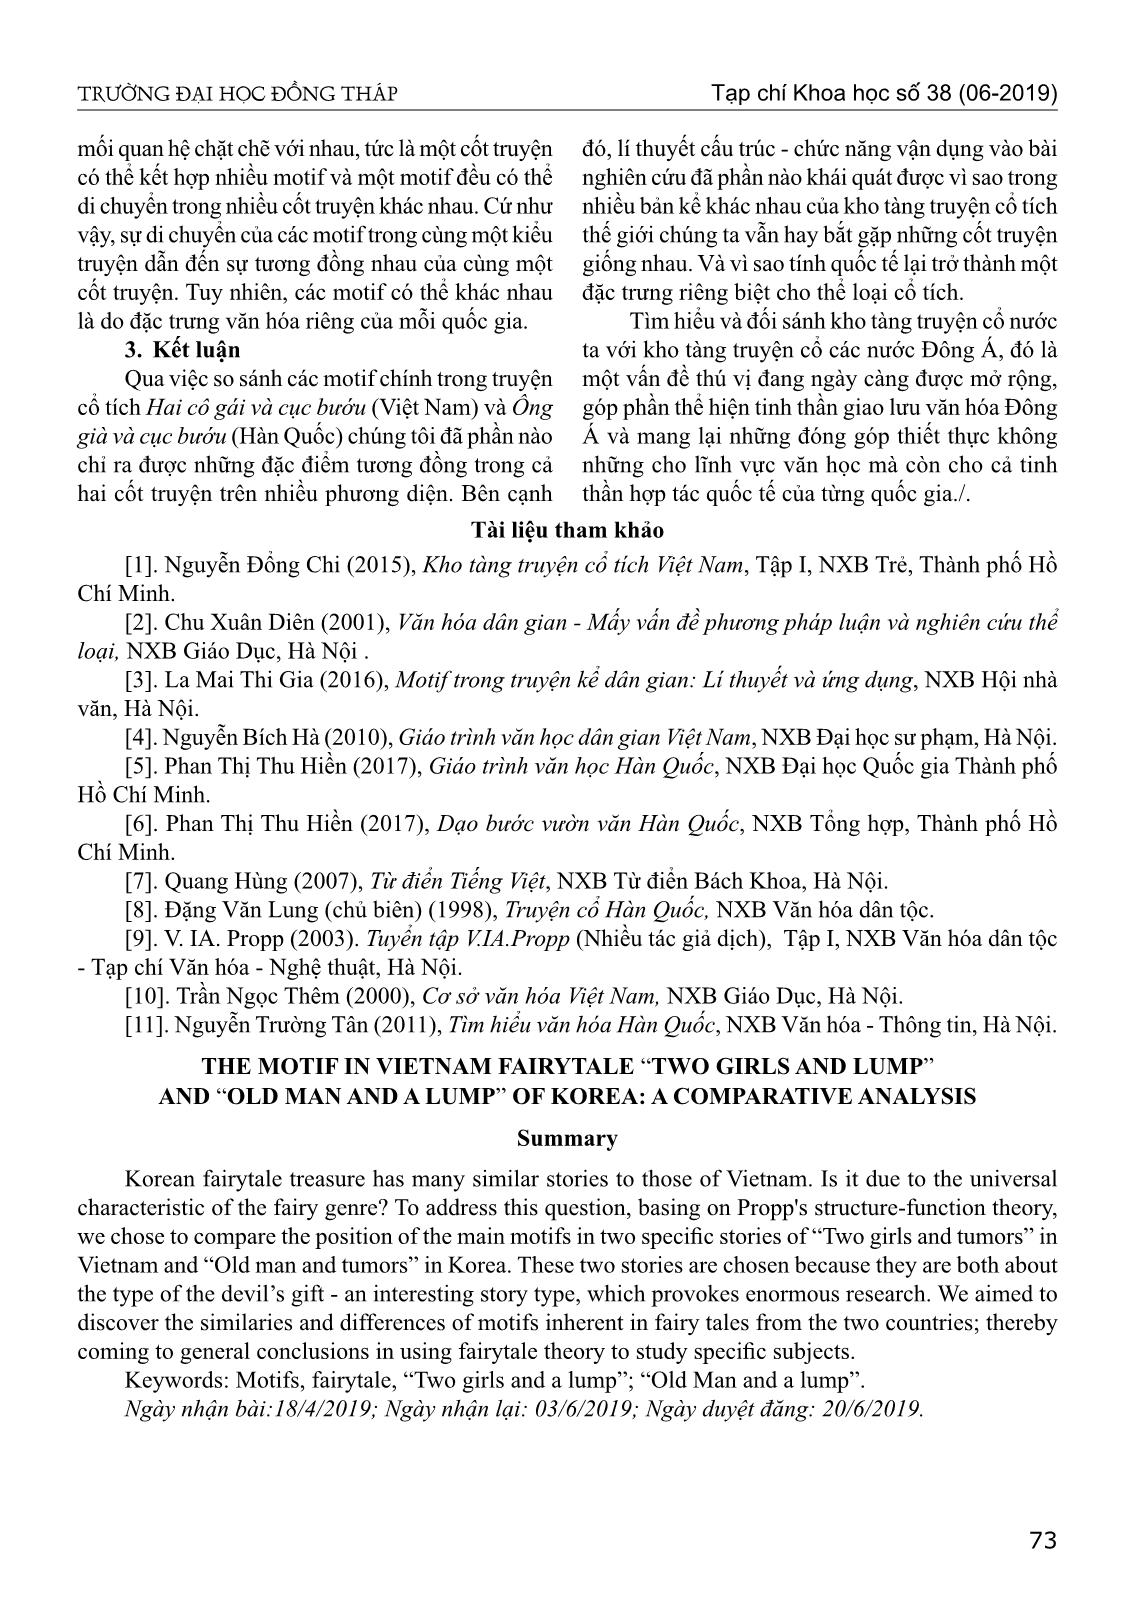 Motif trong truyện cổ tích hai cô gái và cục bướu của Việt Nam và ông già và cục bướu của Hàn Quốc từ góc nhìn so sánh trang 7